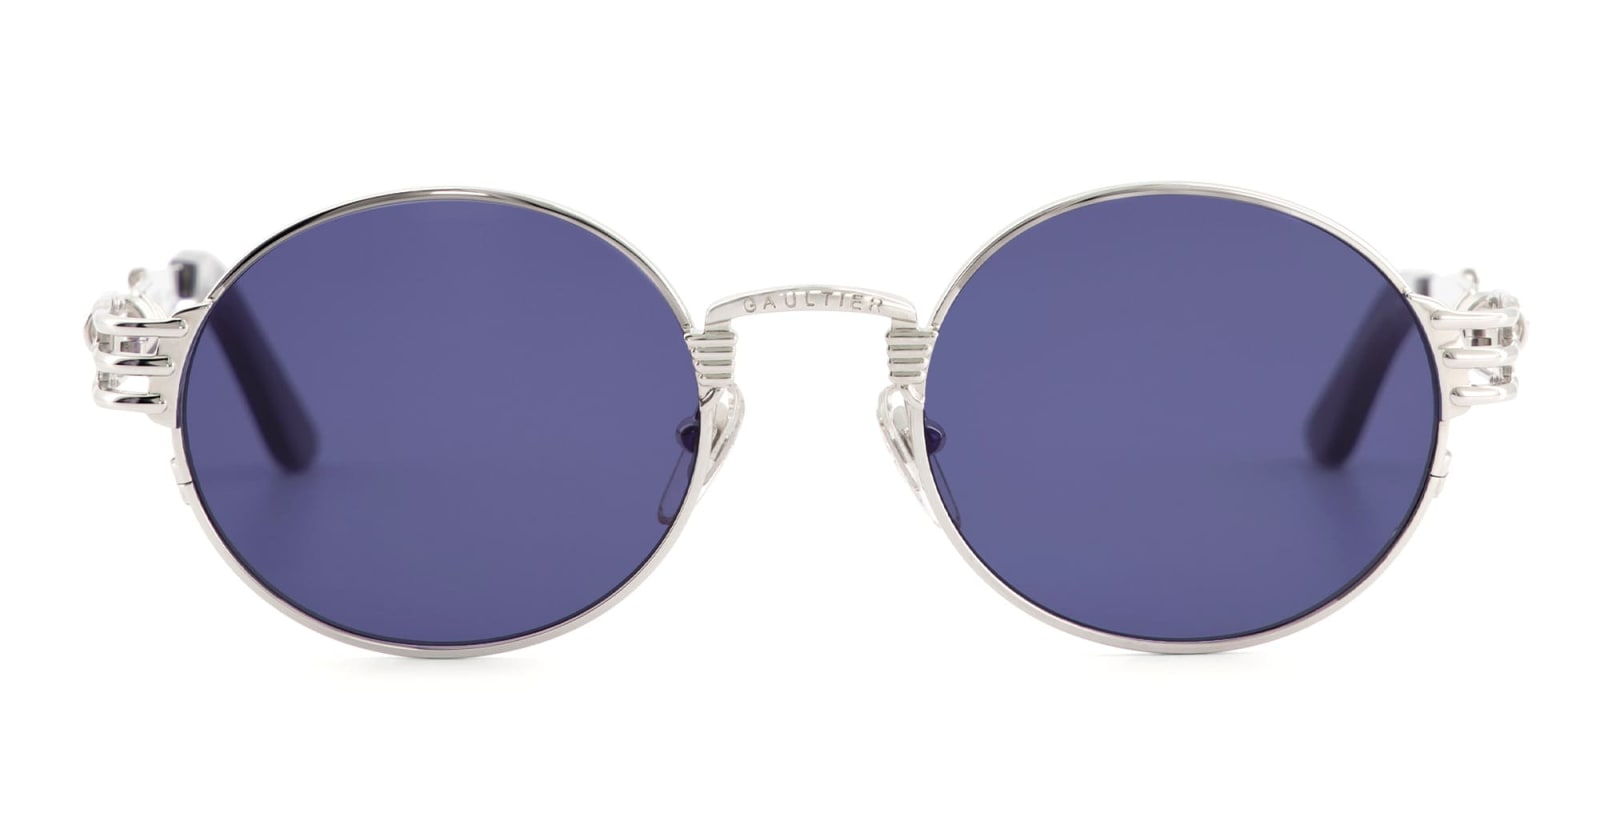 Jean Paul Gaultier 56-6106 - Double Resort / Silver Sunglasses In Blue